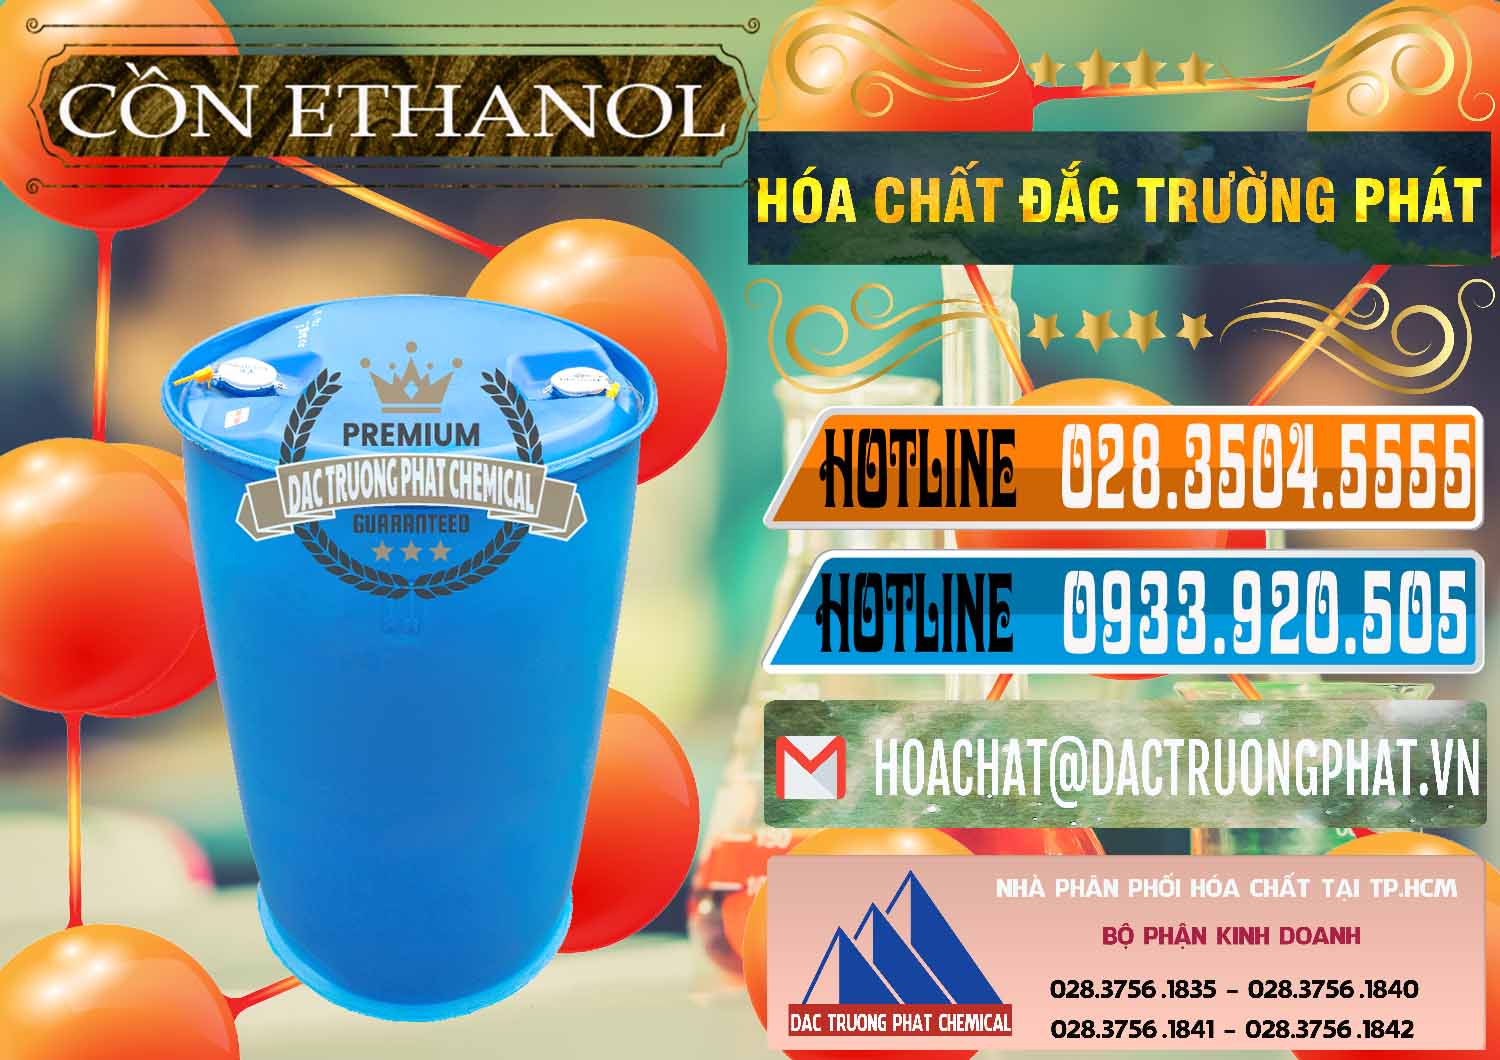 Đơn vị bán & phân phối Cồn Ethanol - C2H5OH Thực Phẩm Food Grade Việt Nam - 0330 - Cty chuyên cung cấp _ nhập khẩu hóa chất tại TP.HCM - stmp.net